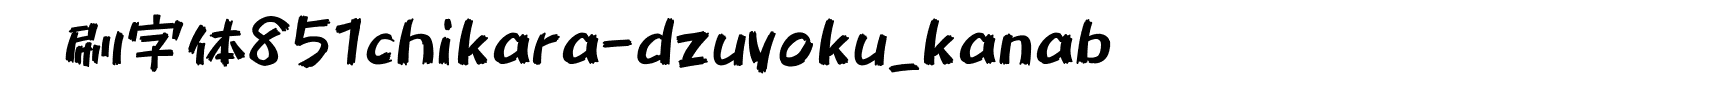 笔刷字体851chikara-dzuyoku_kanab字体图片演示